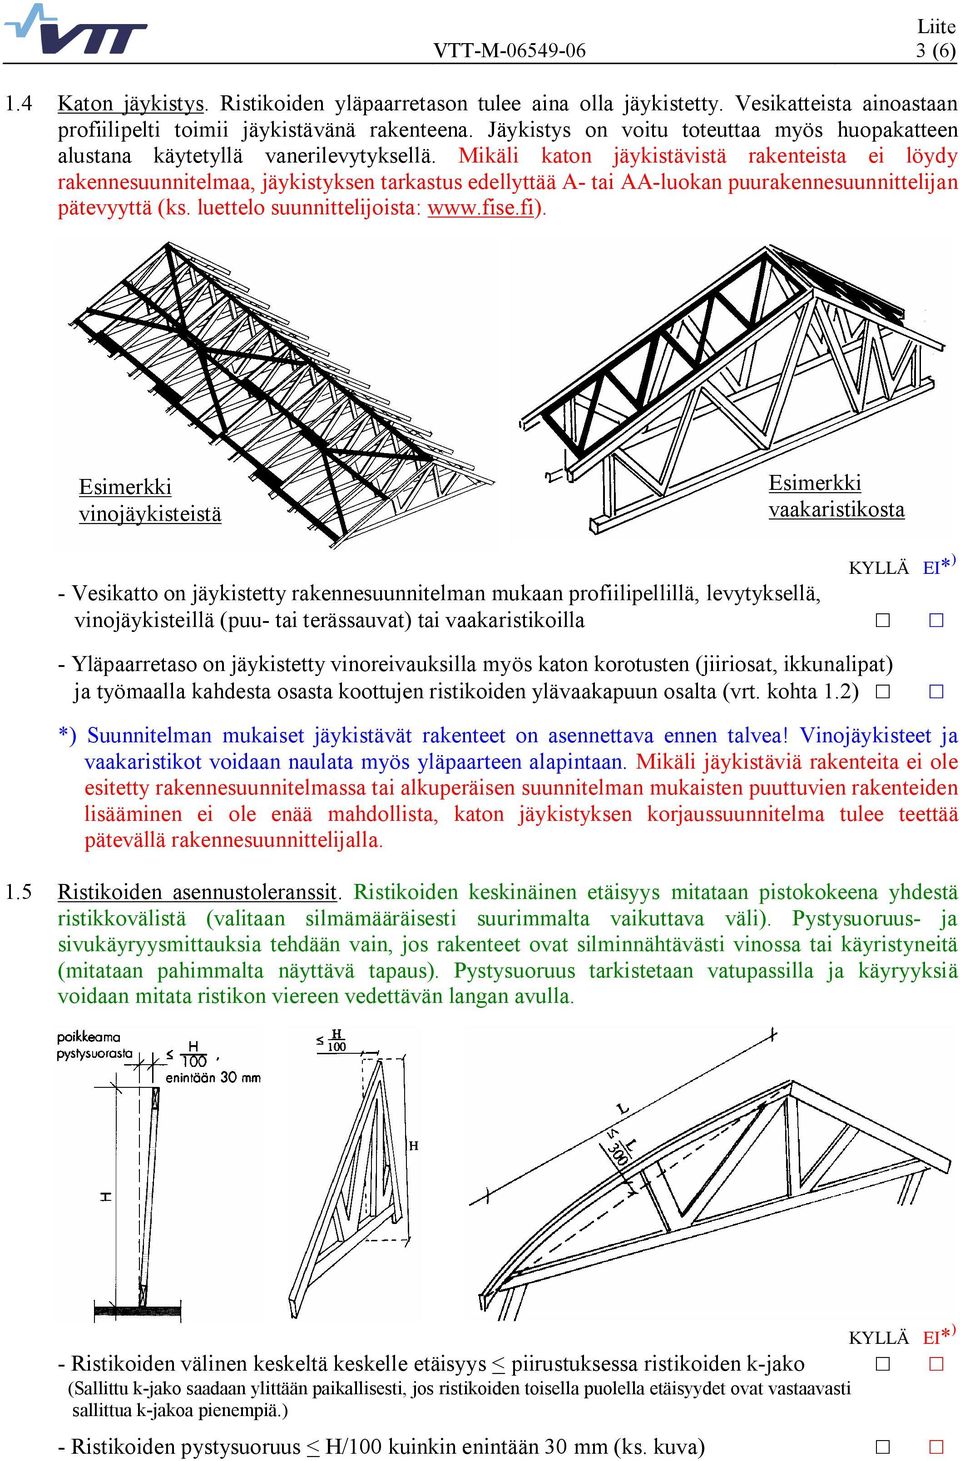 Mikäli katon jäykistävistä rakenteista ei löydy rakennesuunnitelmaa, jäykistyksen tarkastus edellyttää A tai AA luokan puurakennesuunnittelijan pätevyyttä (ks. luettelo suunnittelijoista: www.fise.